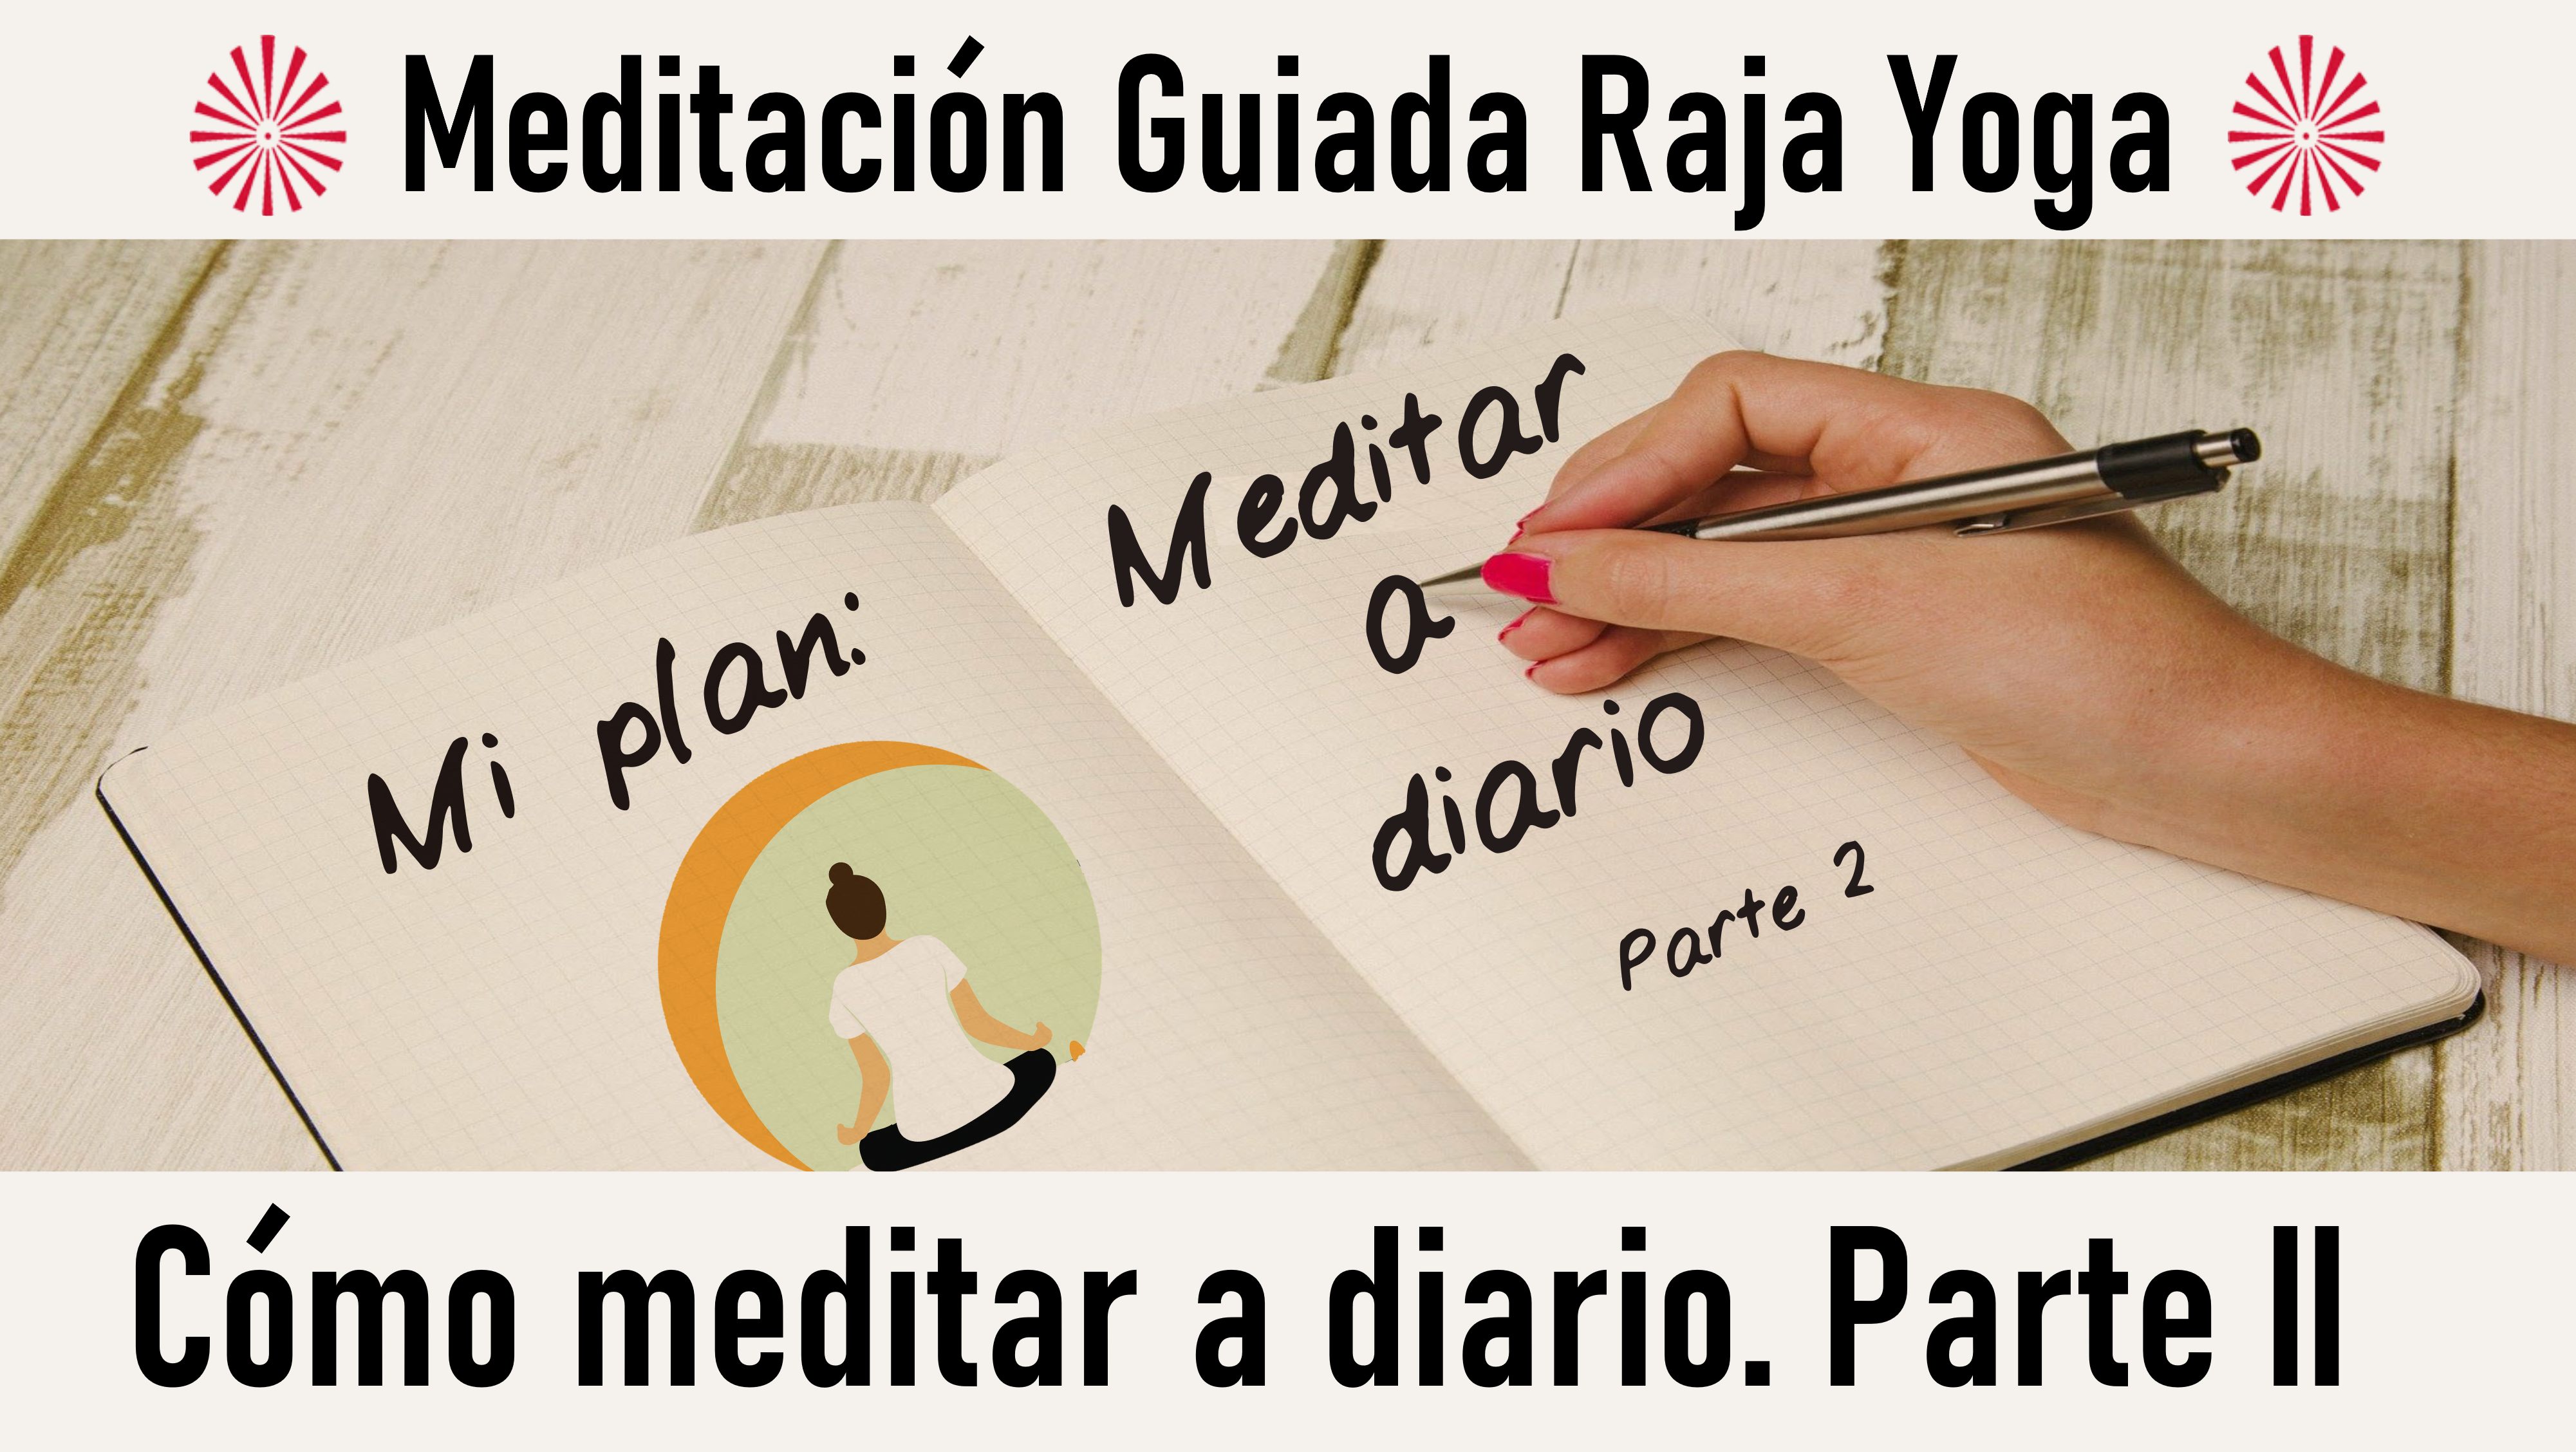 Meditación Raja Yoga: Cómo meditar a diario, parte 2 (13 Octubre 2020) On-line desde Canarias